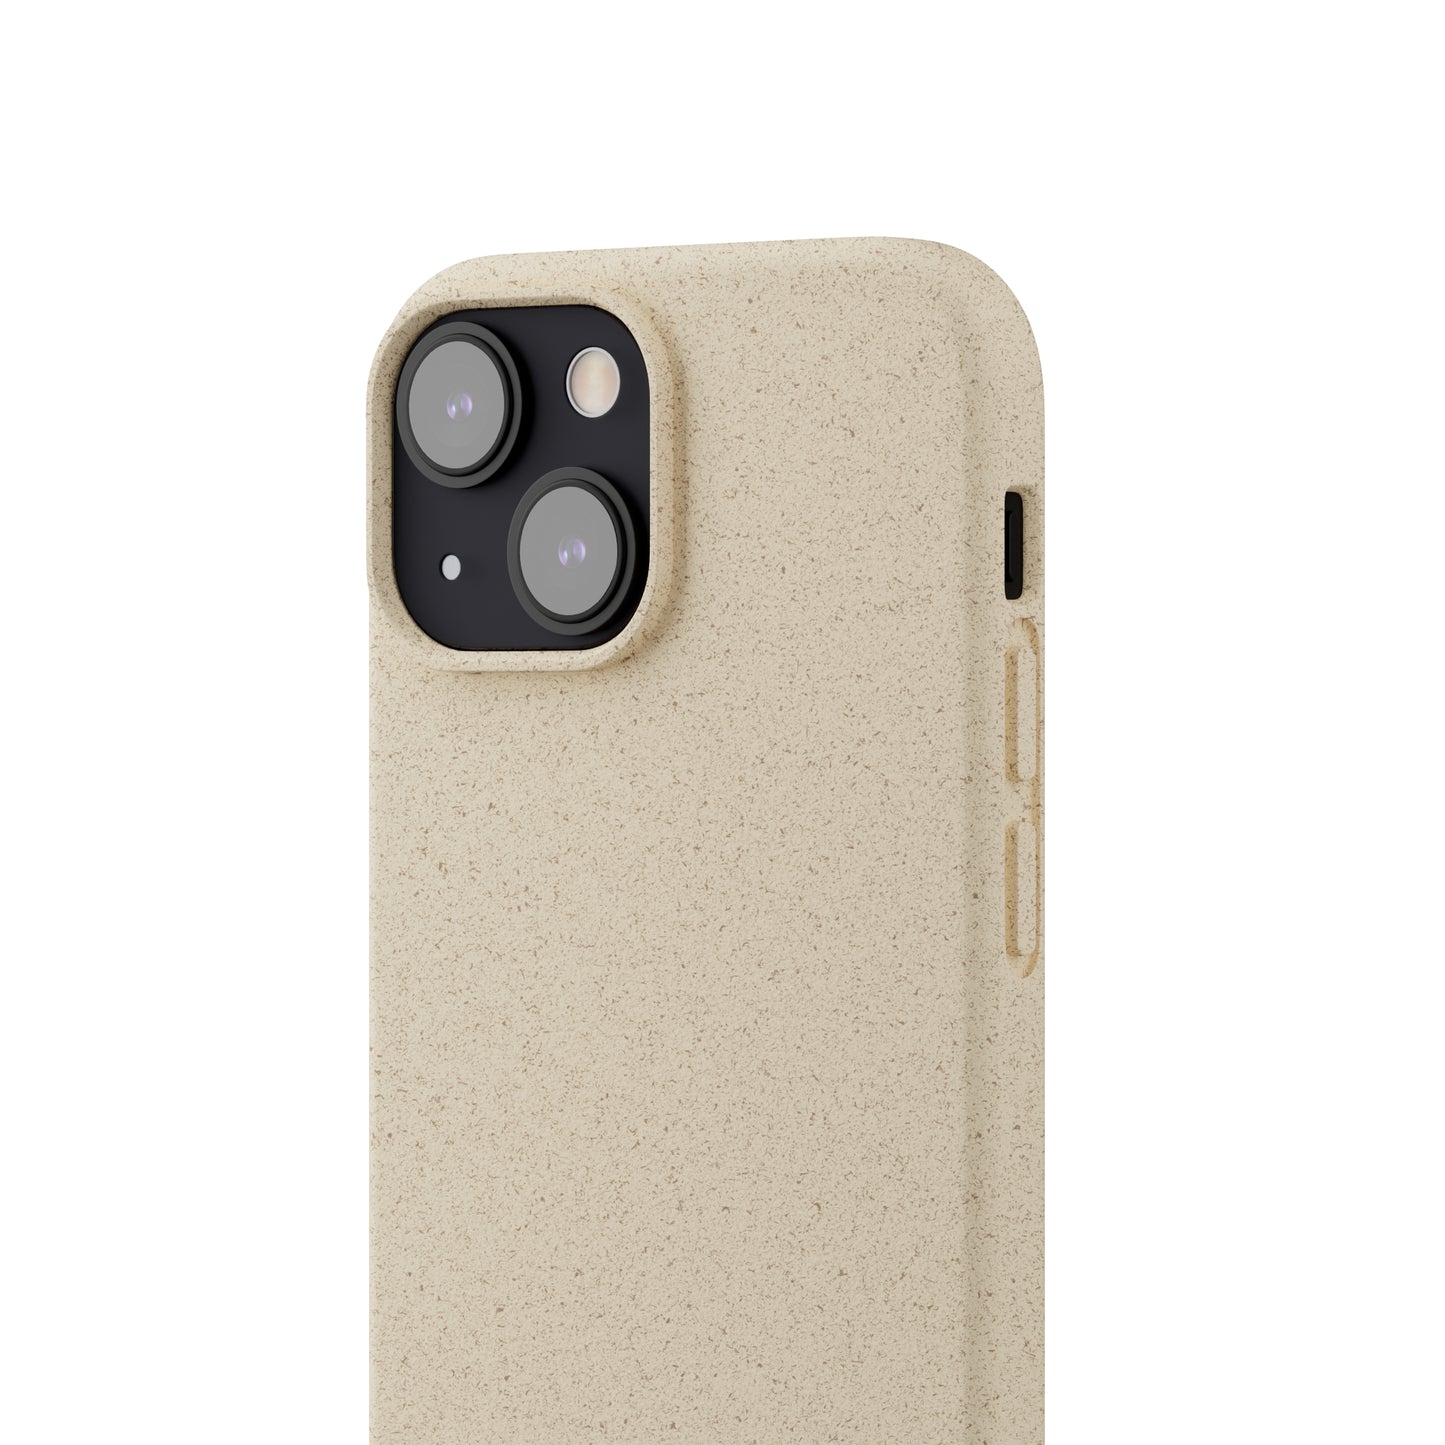 Chanaé Biodegradable iPhone Case ♻️